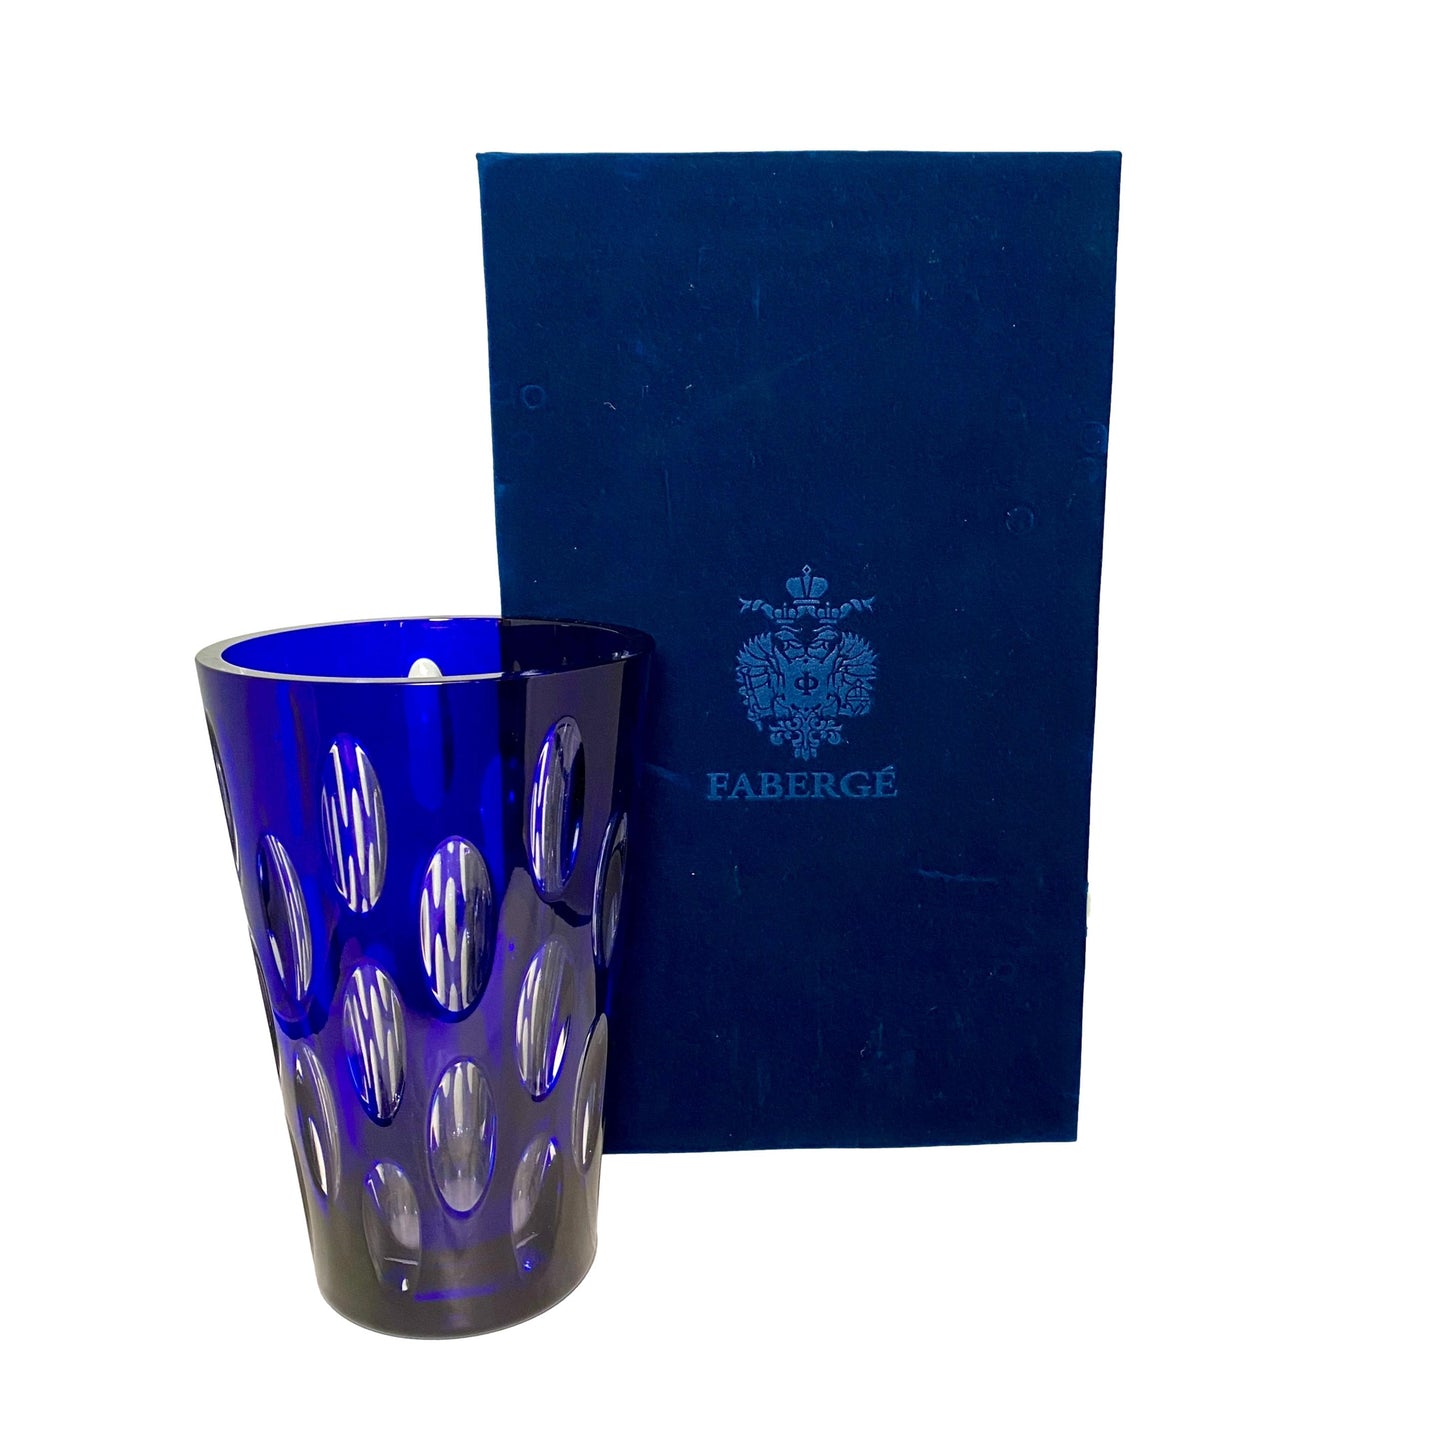 Signed Faberge Cobalt Blue Vase